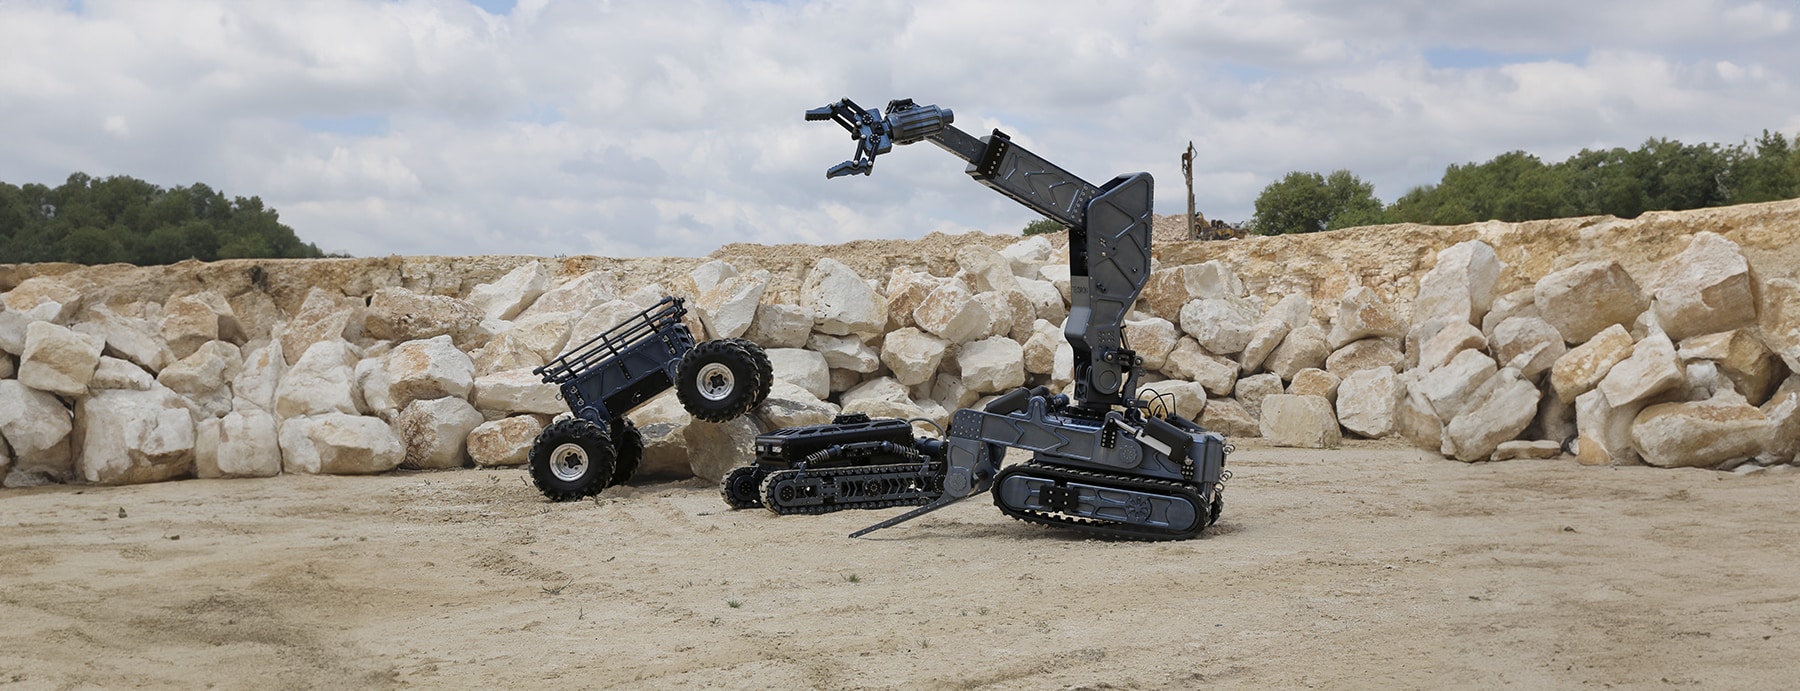 L’Innovation au Service de la Défense : Une Décennie de Développement de Robots Prototypes (2014-2022)